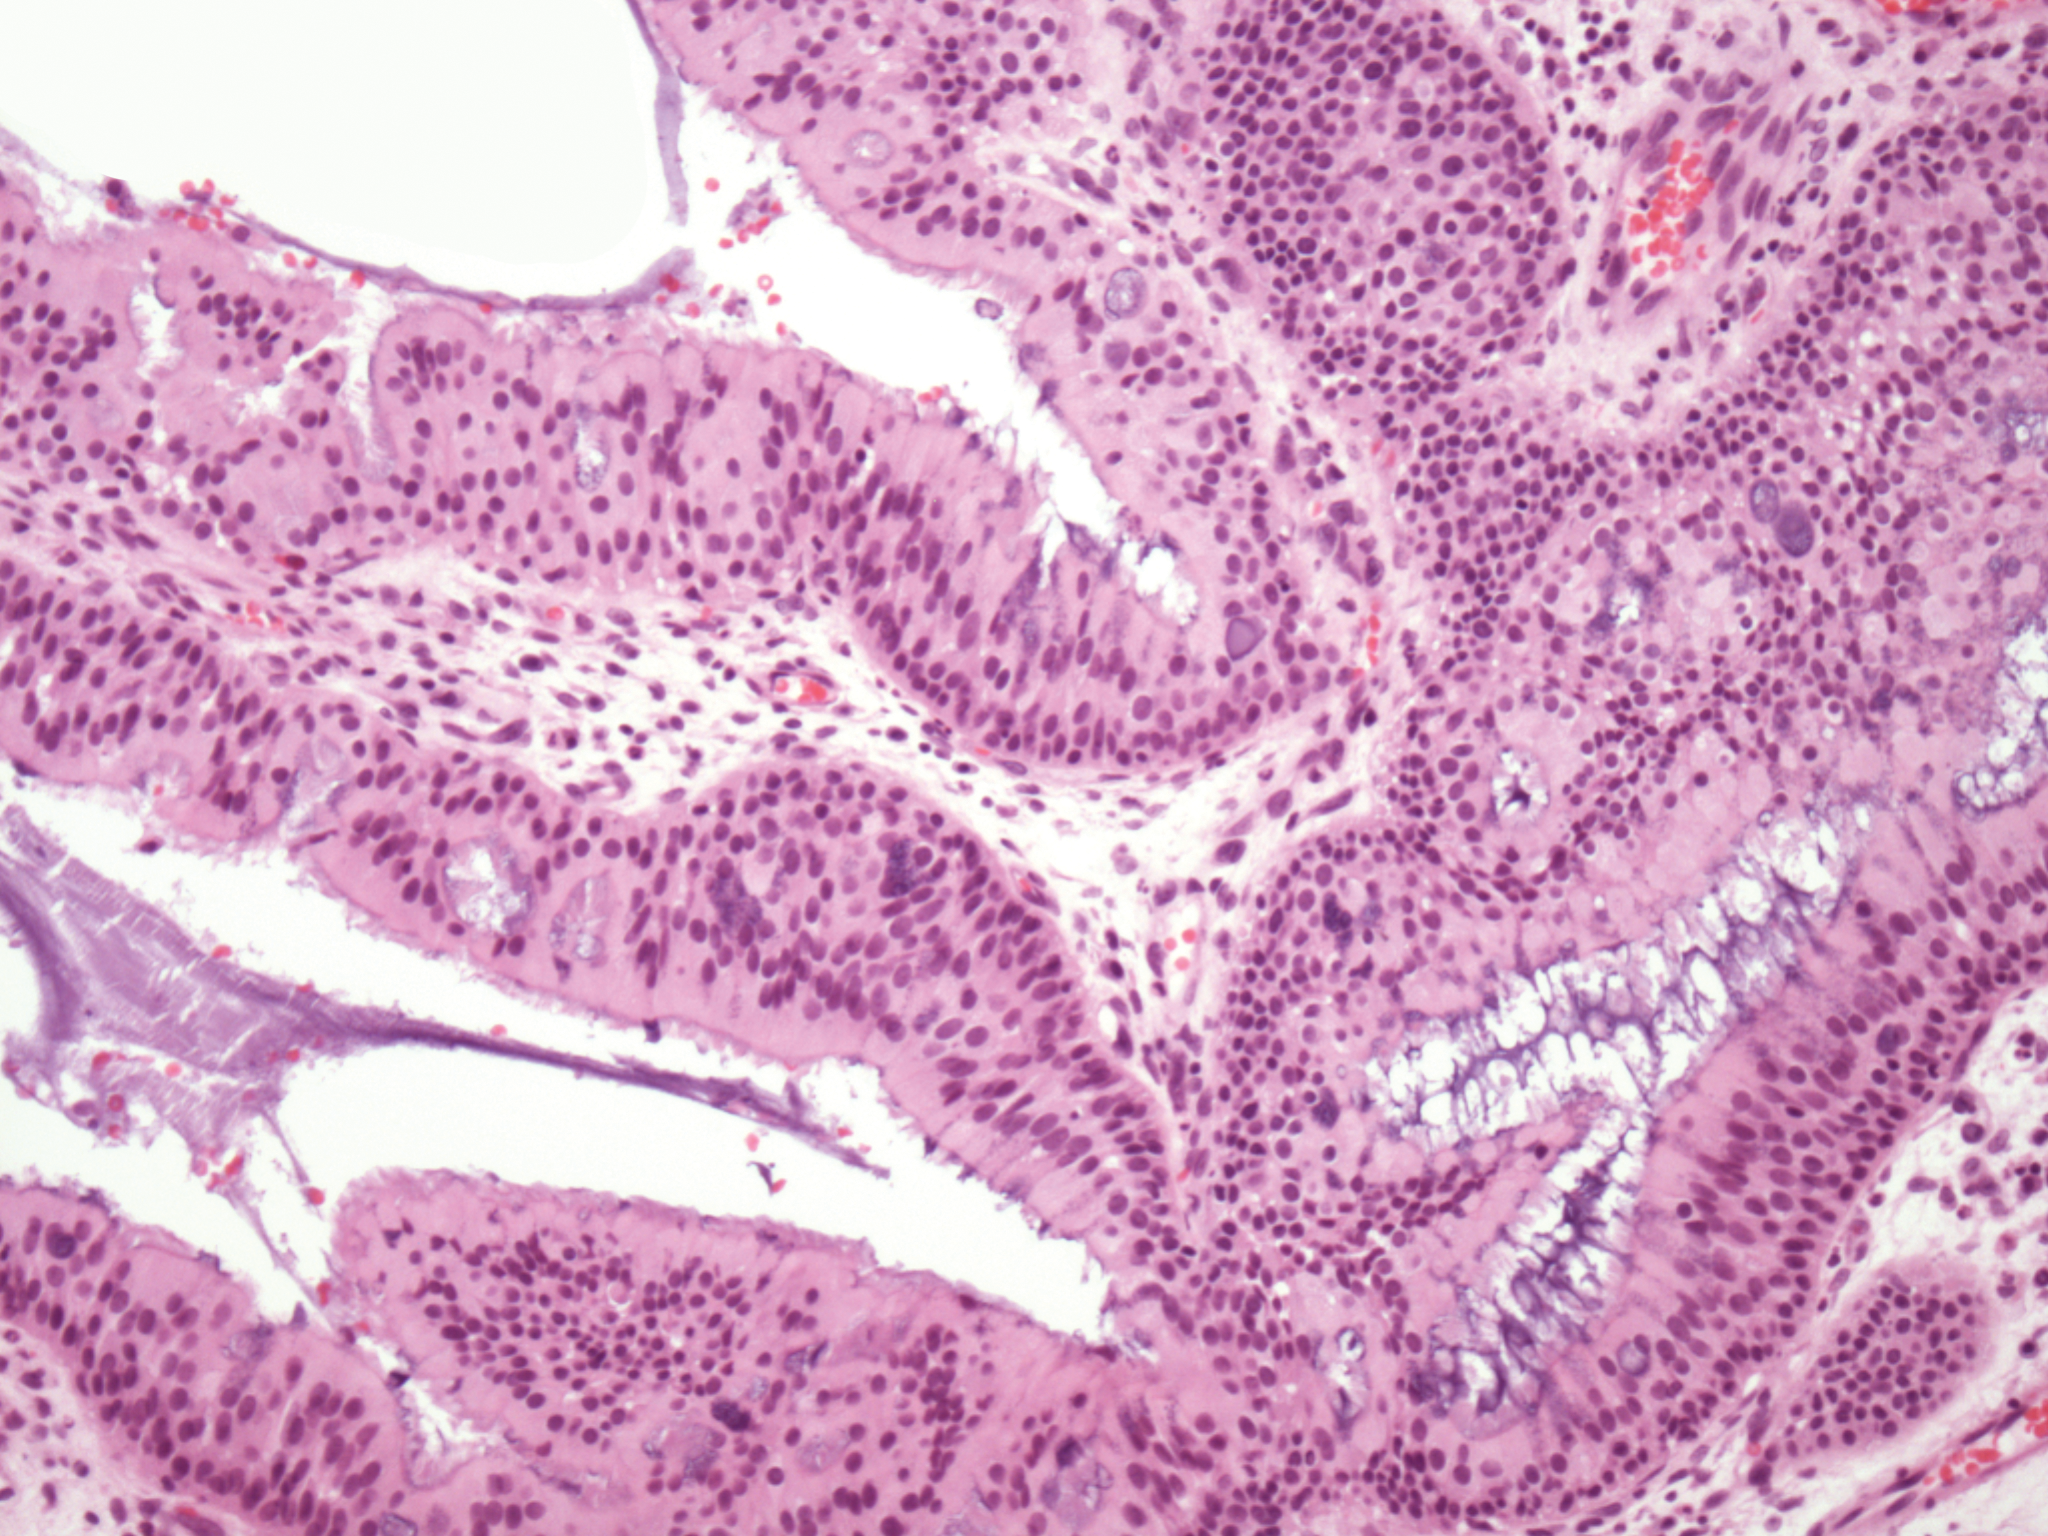 exophytic sinonasal papilloma